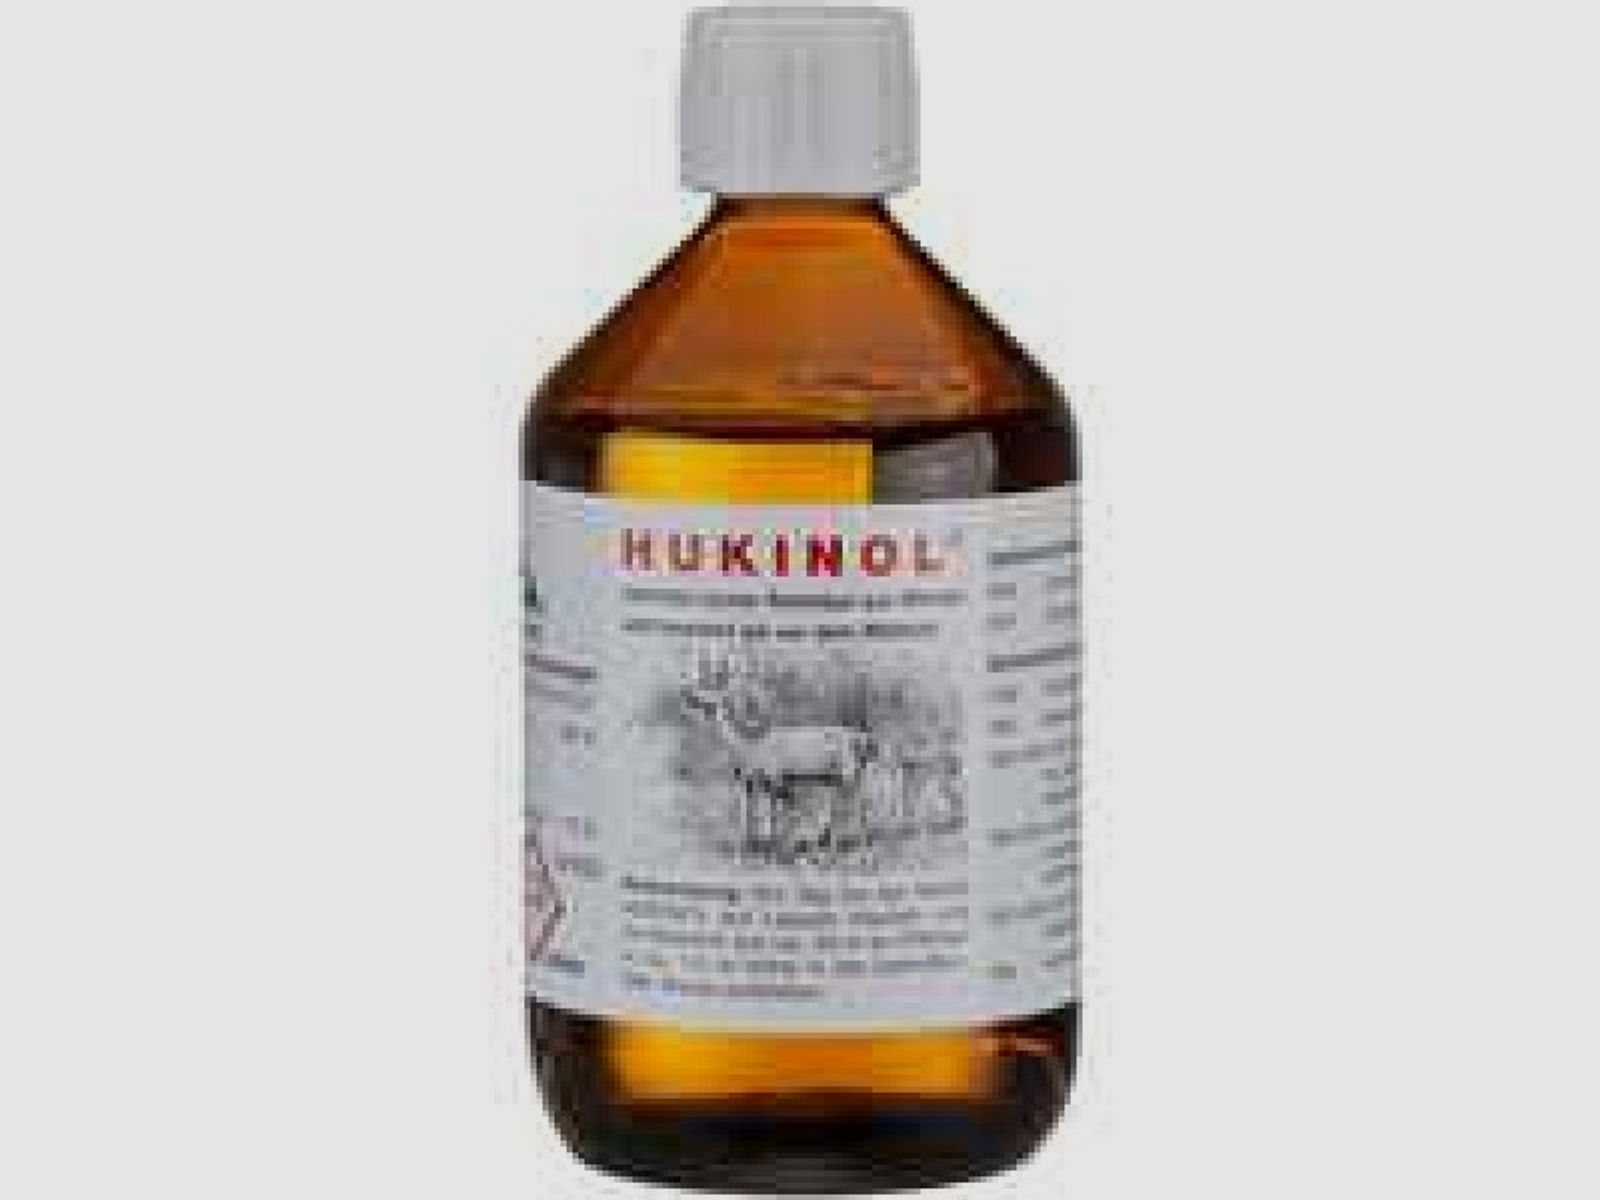 Hukinol, 500 ml